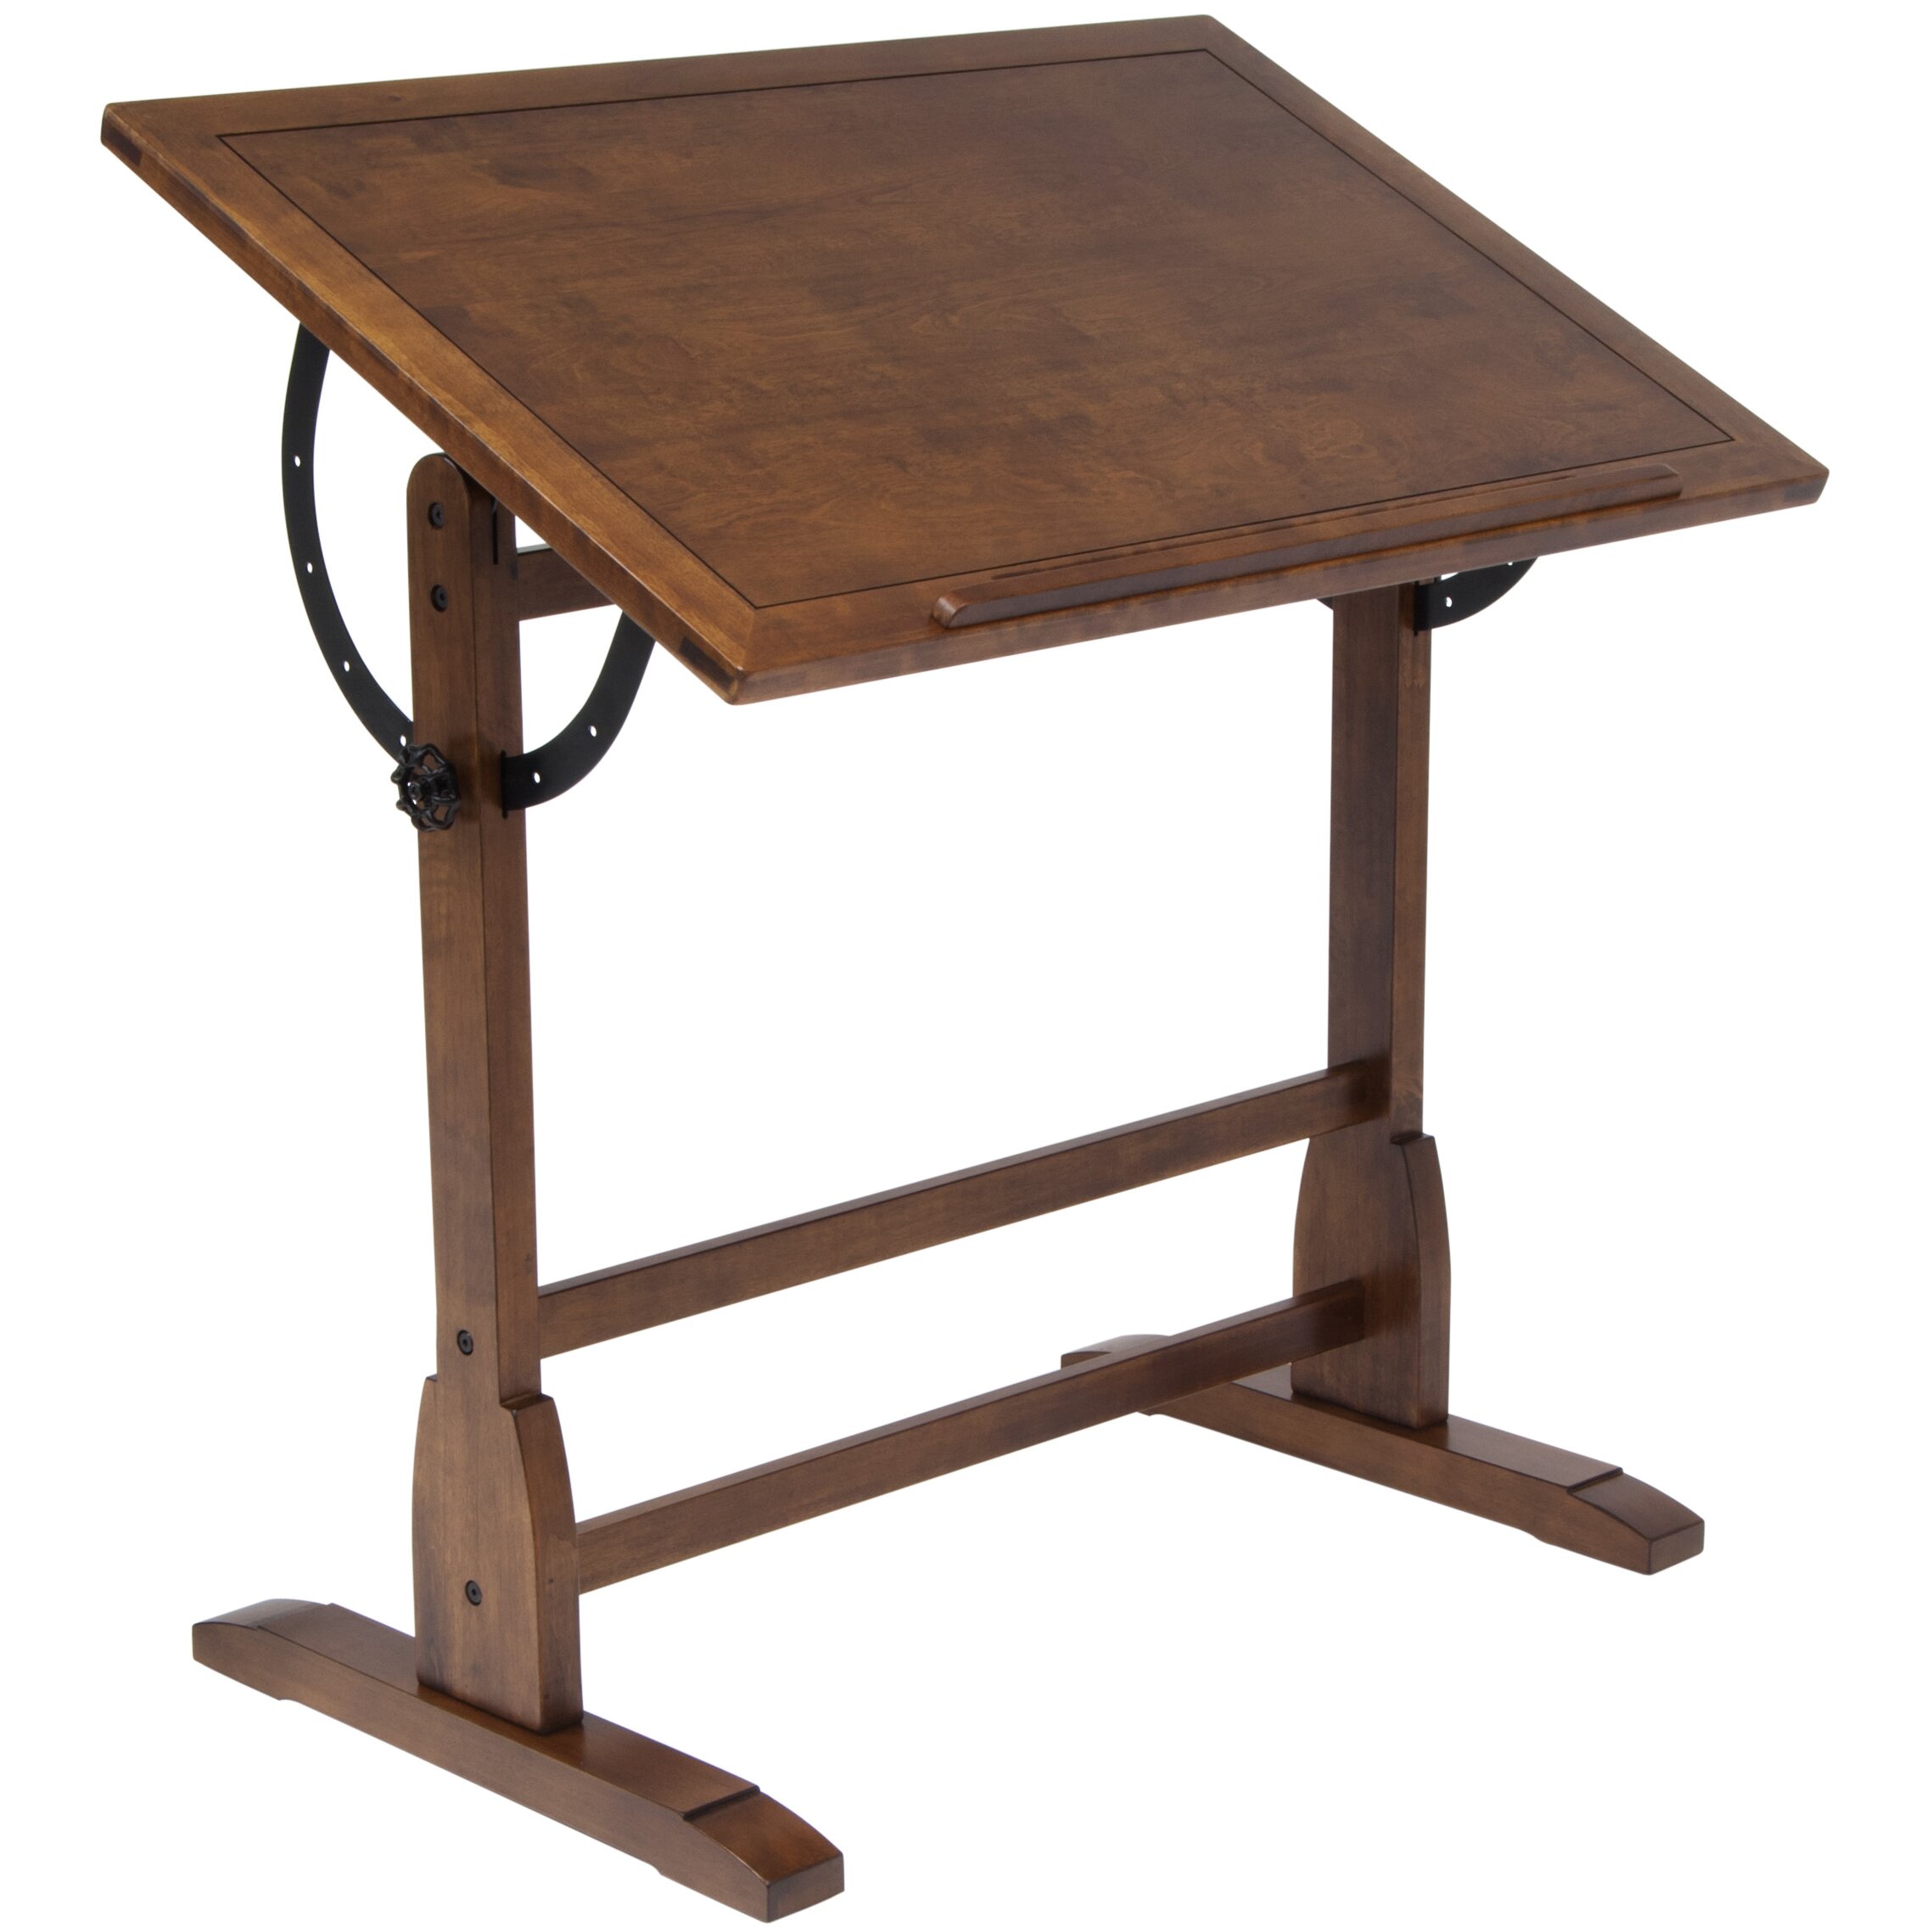 Studio Designs Vintage Wood Drafting Table & Reviews | Wayfair